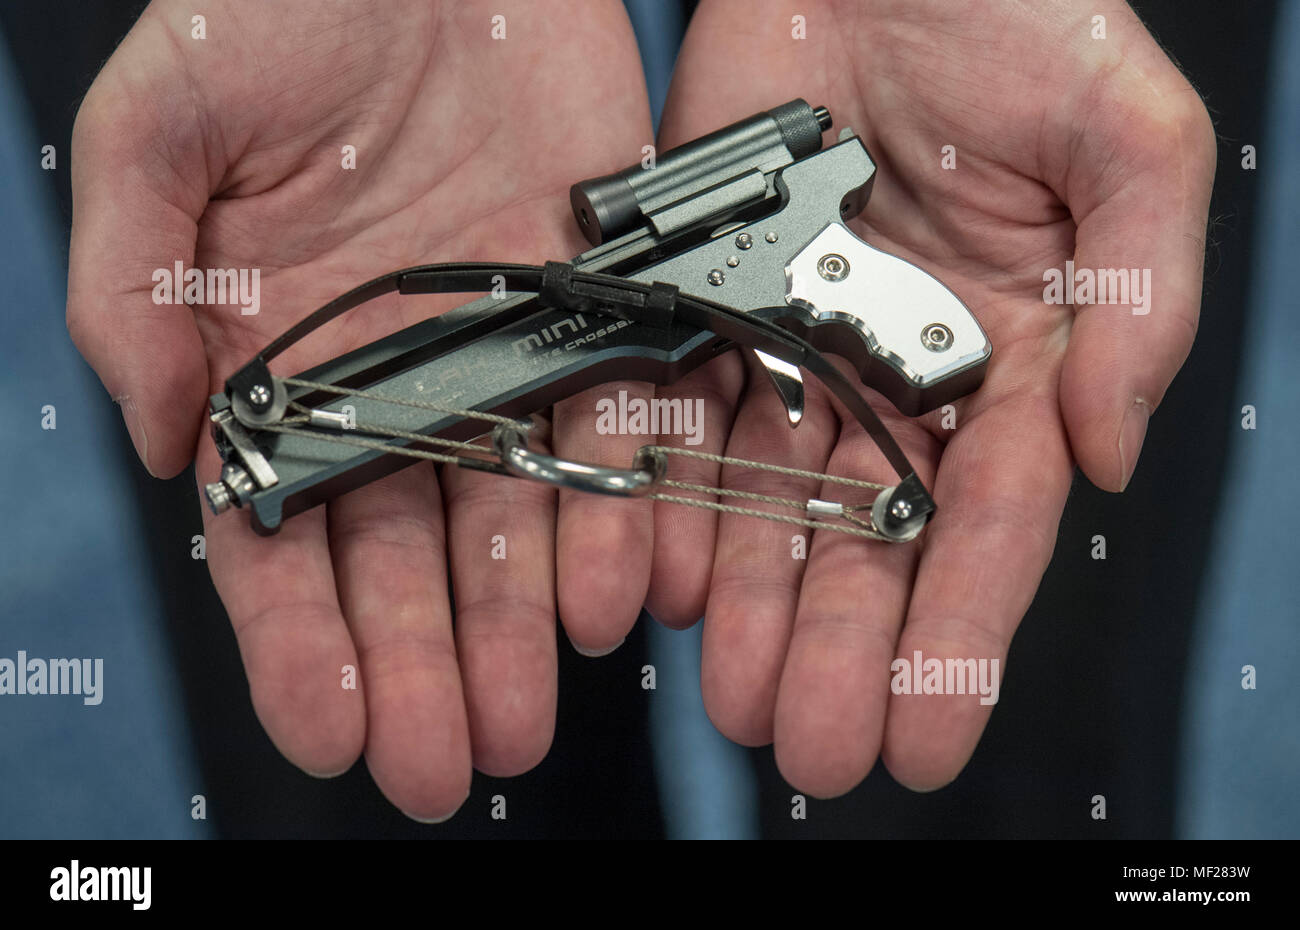 24 April 2018, Deutschland, Frankfurt/Main: Ein Offizier präsentiert eine  Miniatur Armbrust bei der jährlichen Pressekonferenz der Zollstelle. Das  Objekt, ursprünglich aus China, Zahnstocher und dünnes Metall Sticks über  eine Distanz von mehreren